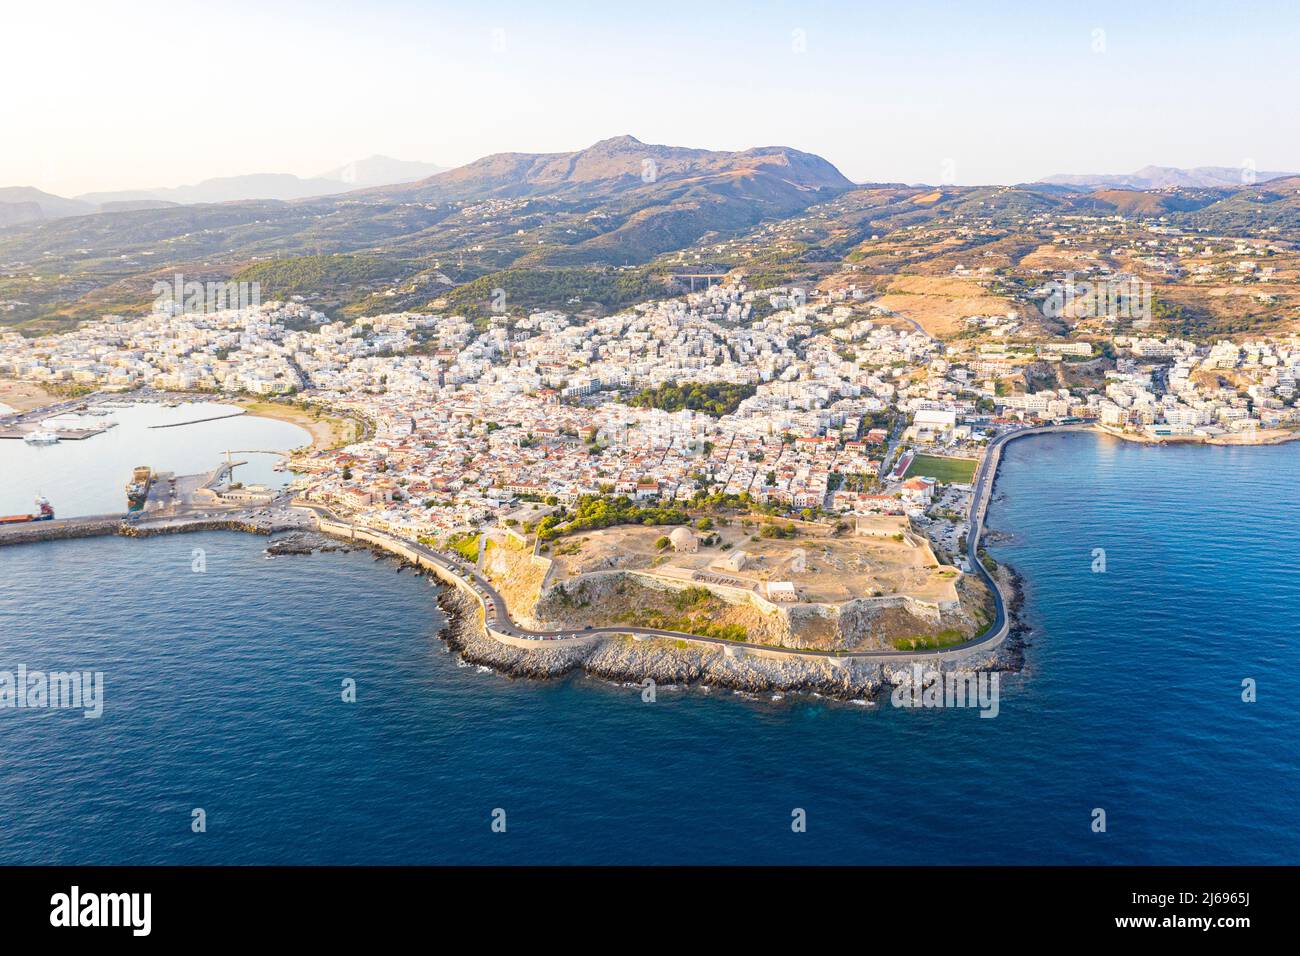 Veduta aerea del vecchio porto veneziano e Fortezza, cittadella della città balneare di Rethymno, isola di Creta, Isole greche, Grecia, Europa Foto Stock